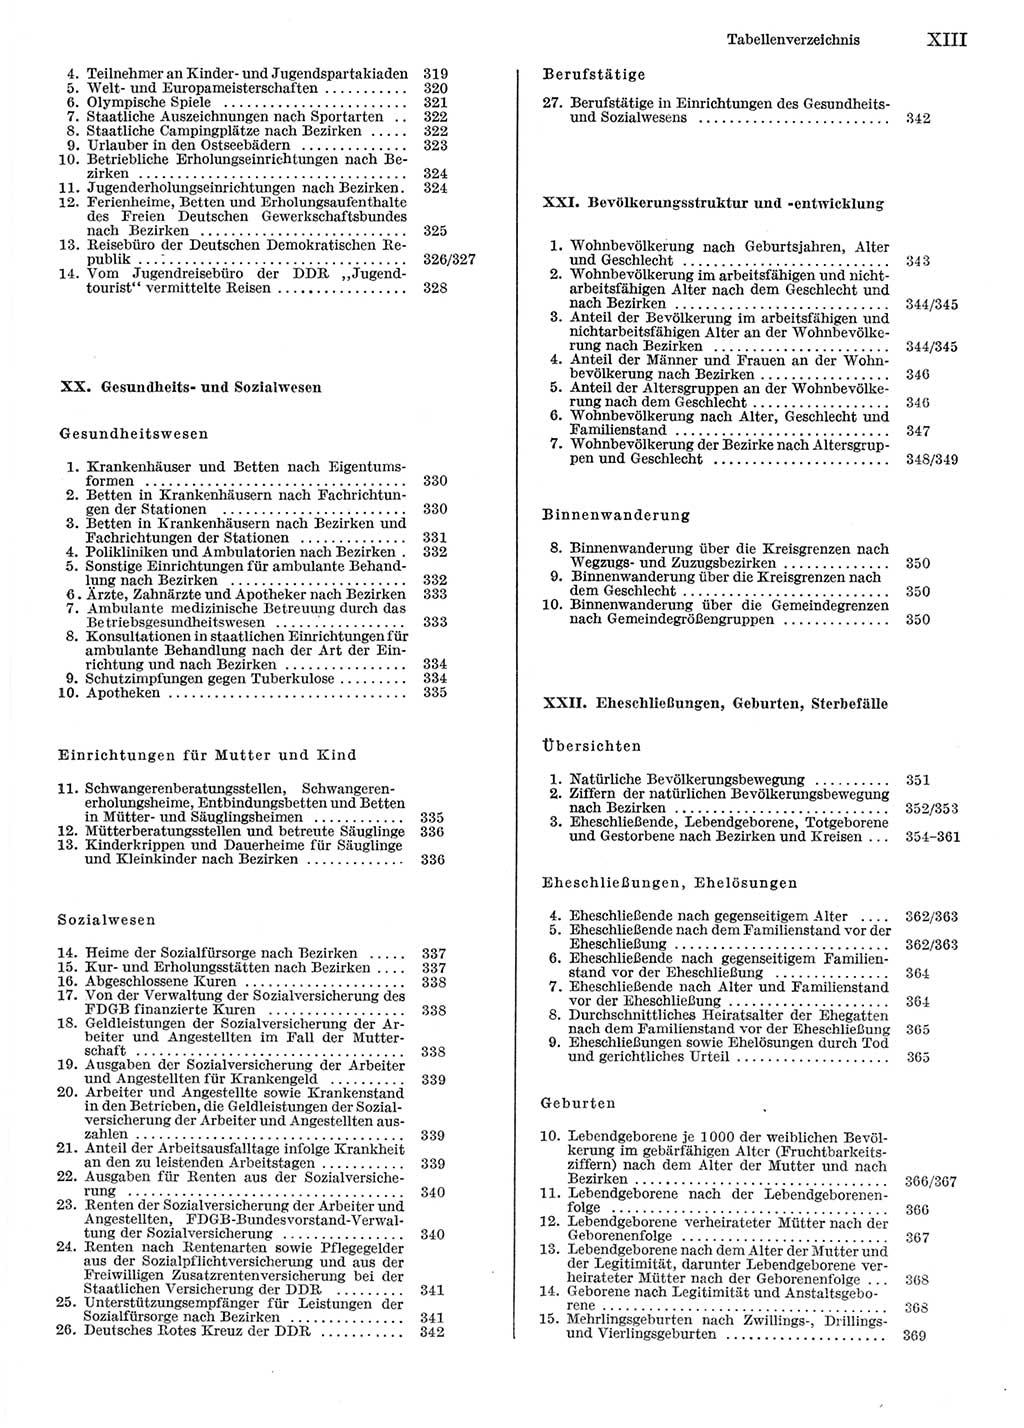 Statistisches Jahrbuch der Deutschen Demokratischen Republik (DDR) 1981, Seite 13 (Stat. Jb. DDR 1981, S. 13)